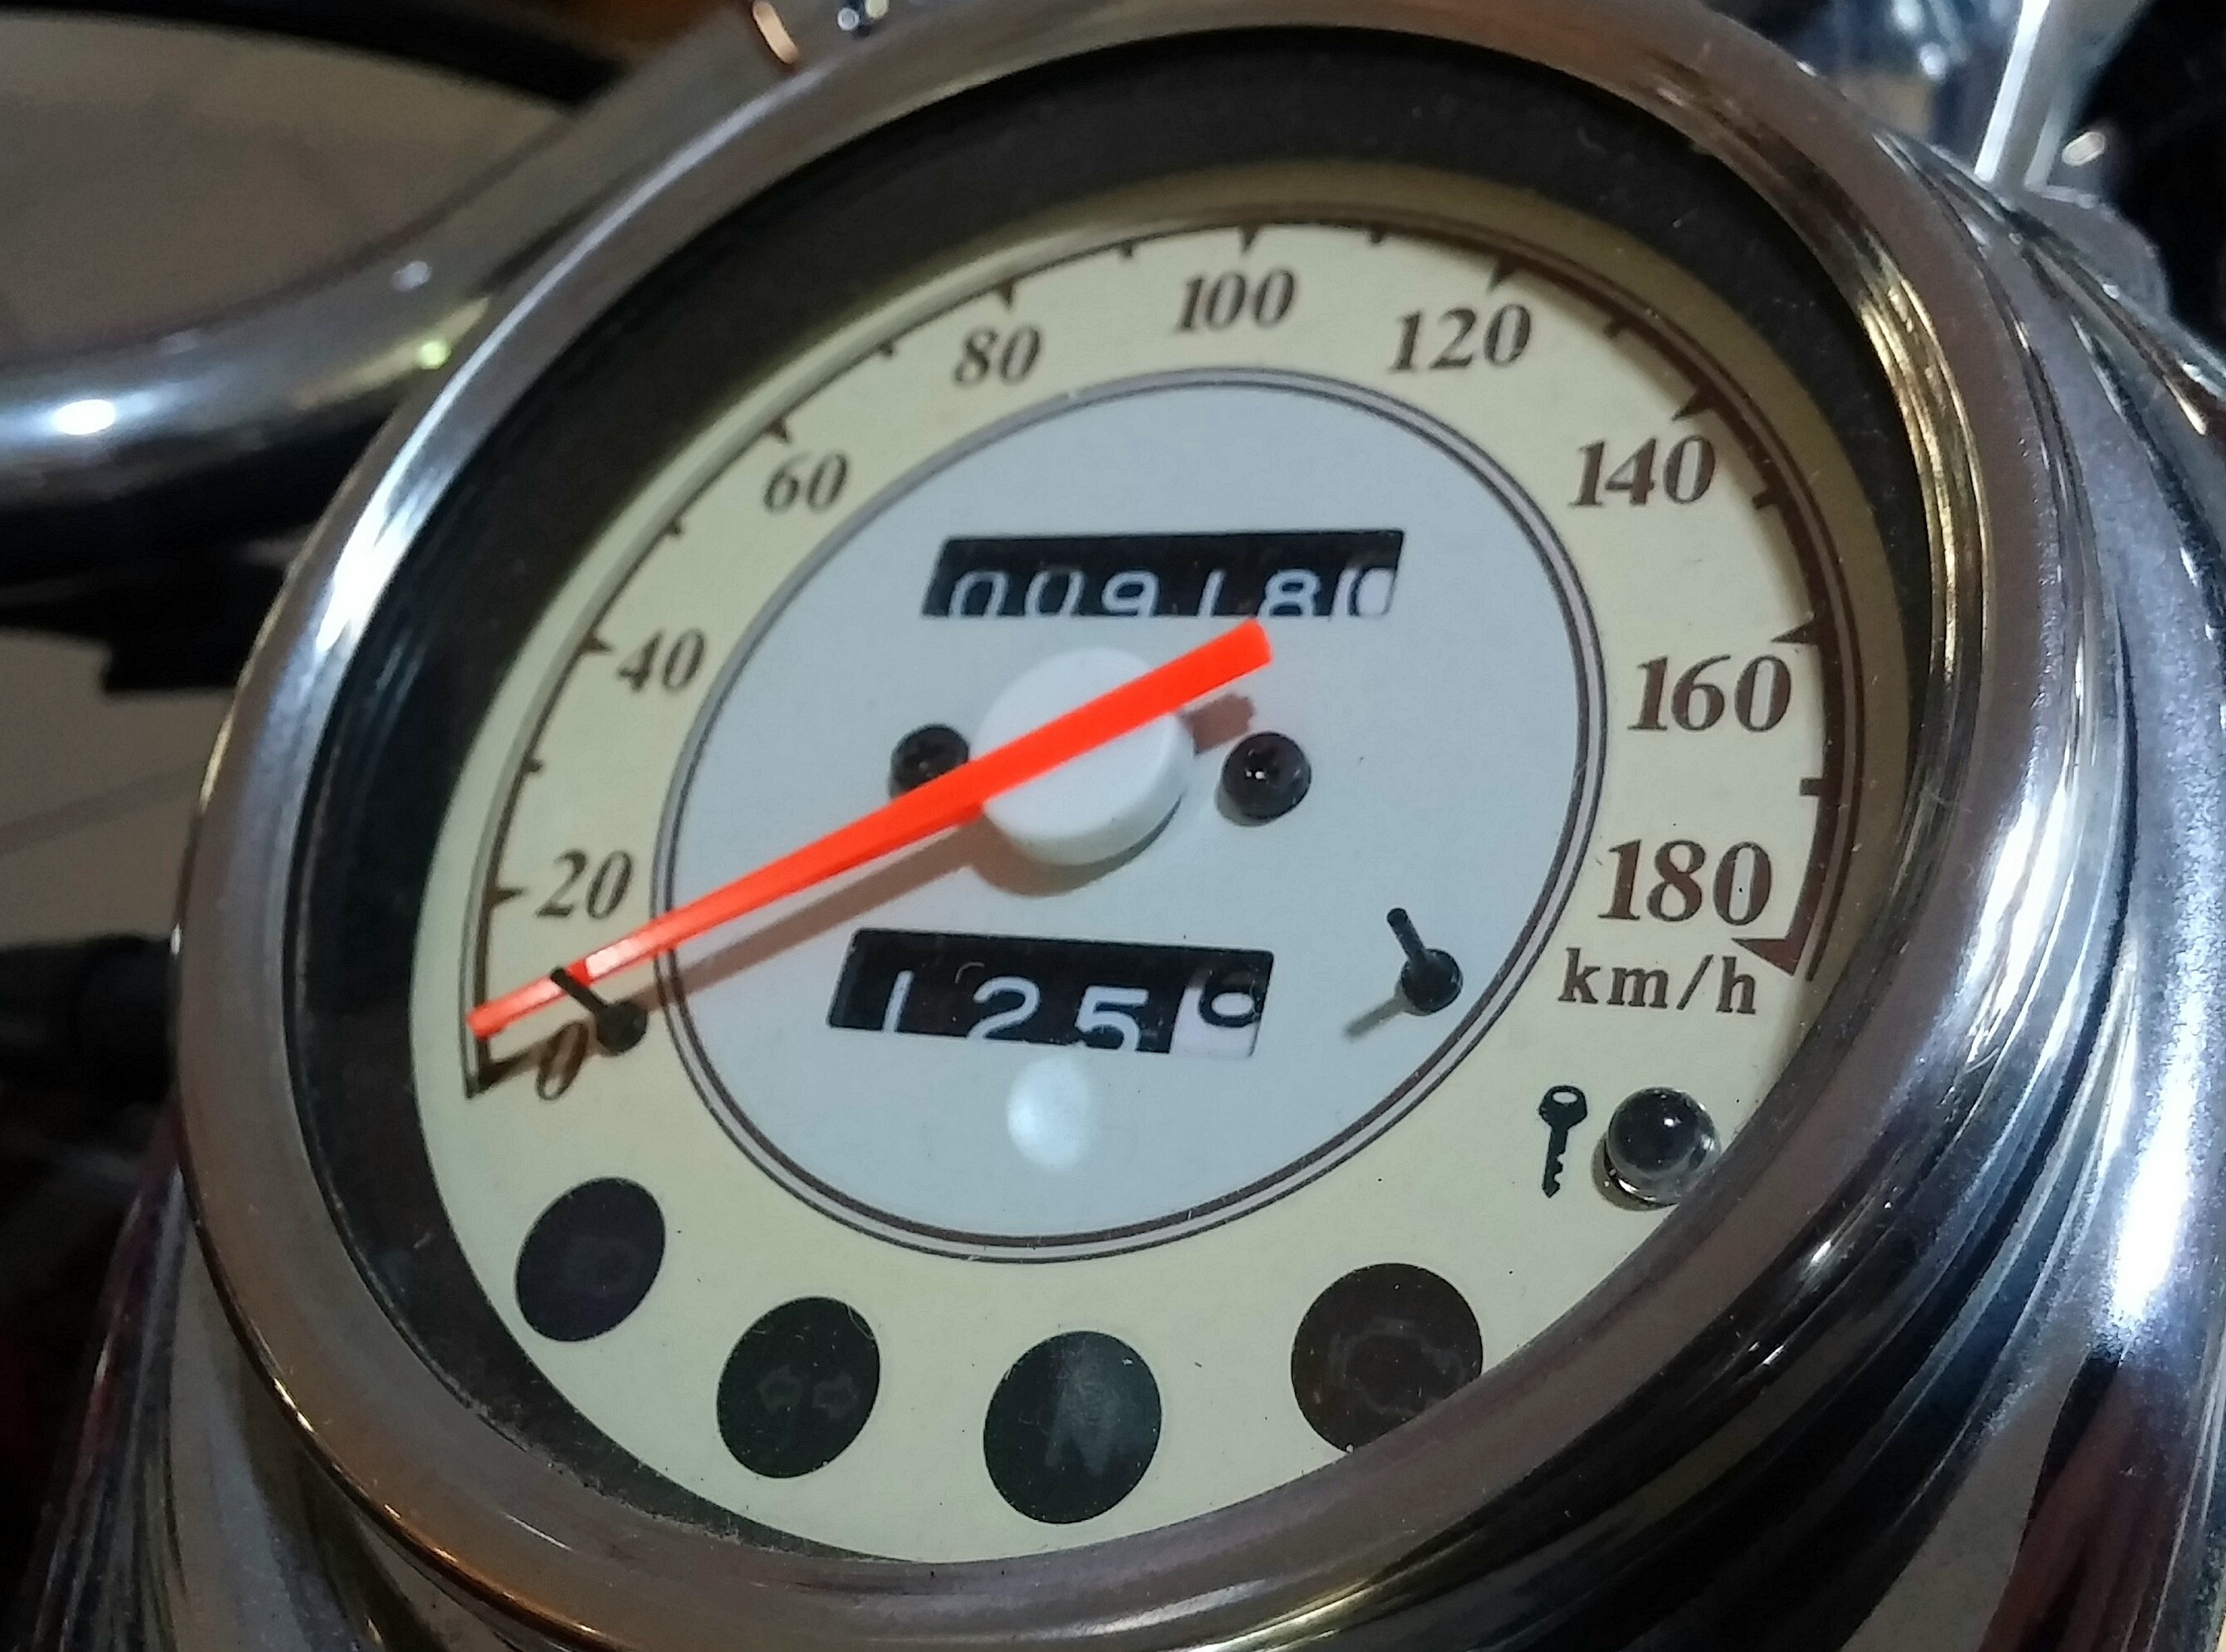 stainless steel round analog speedometer